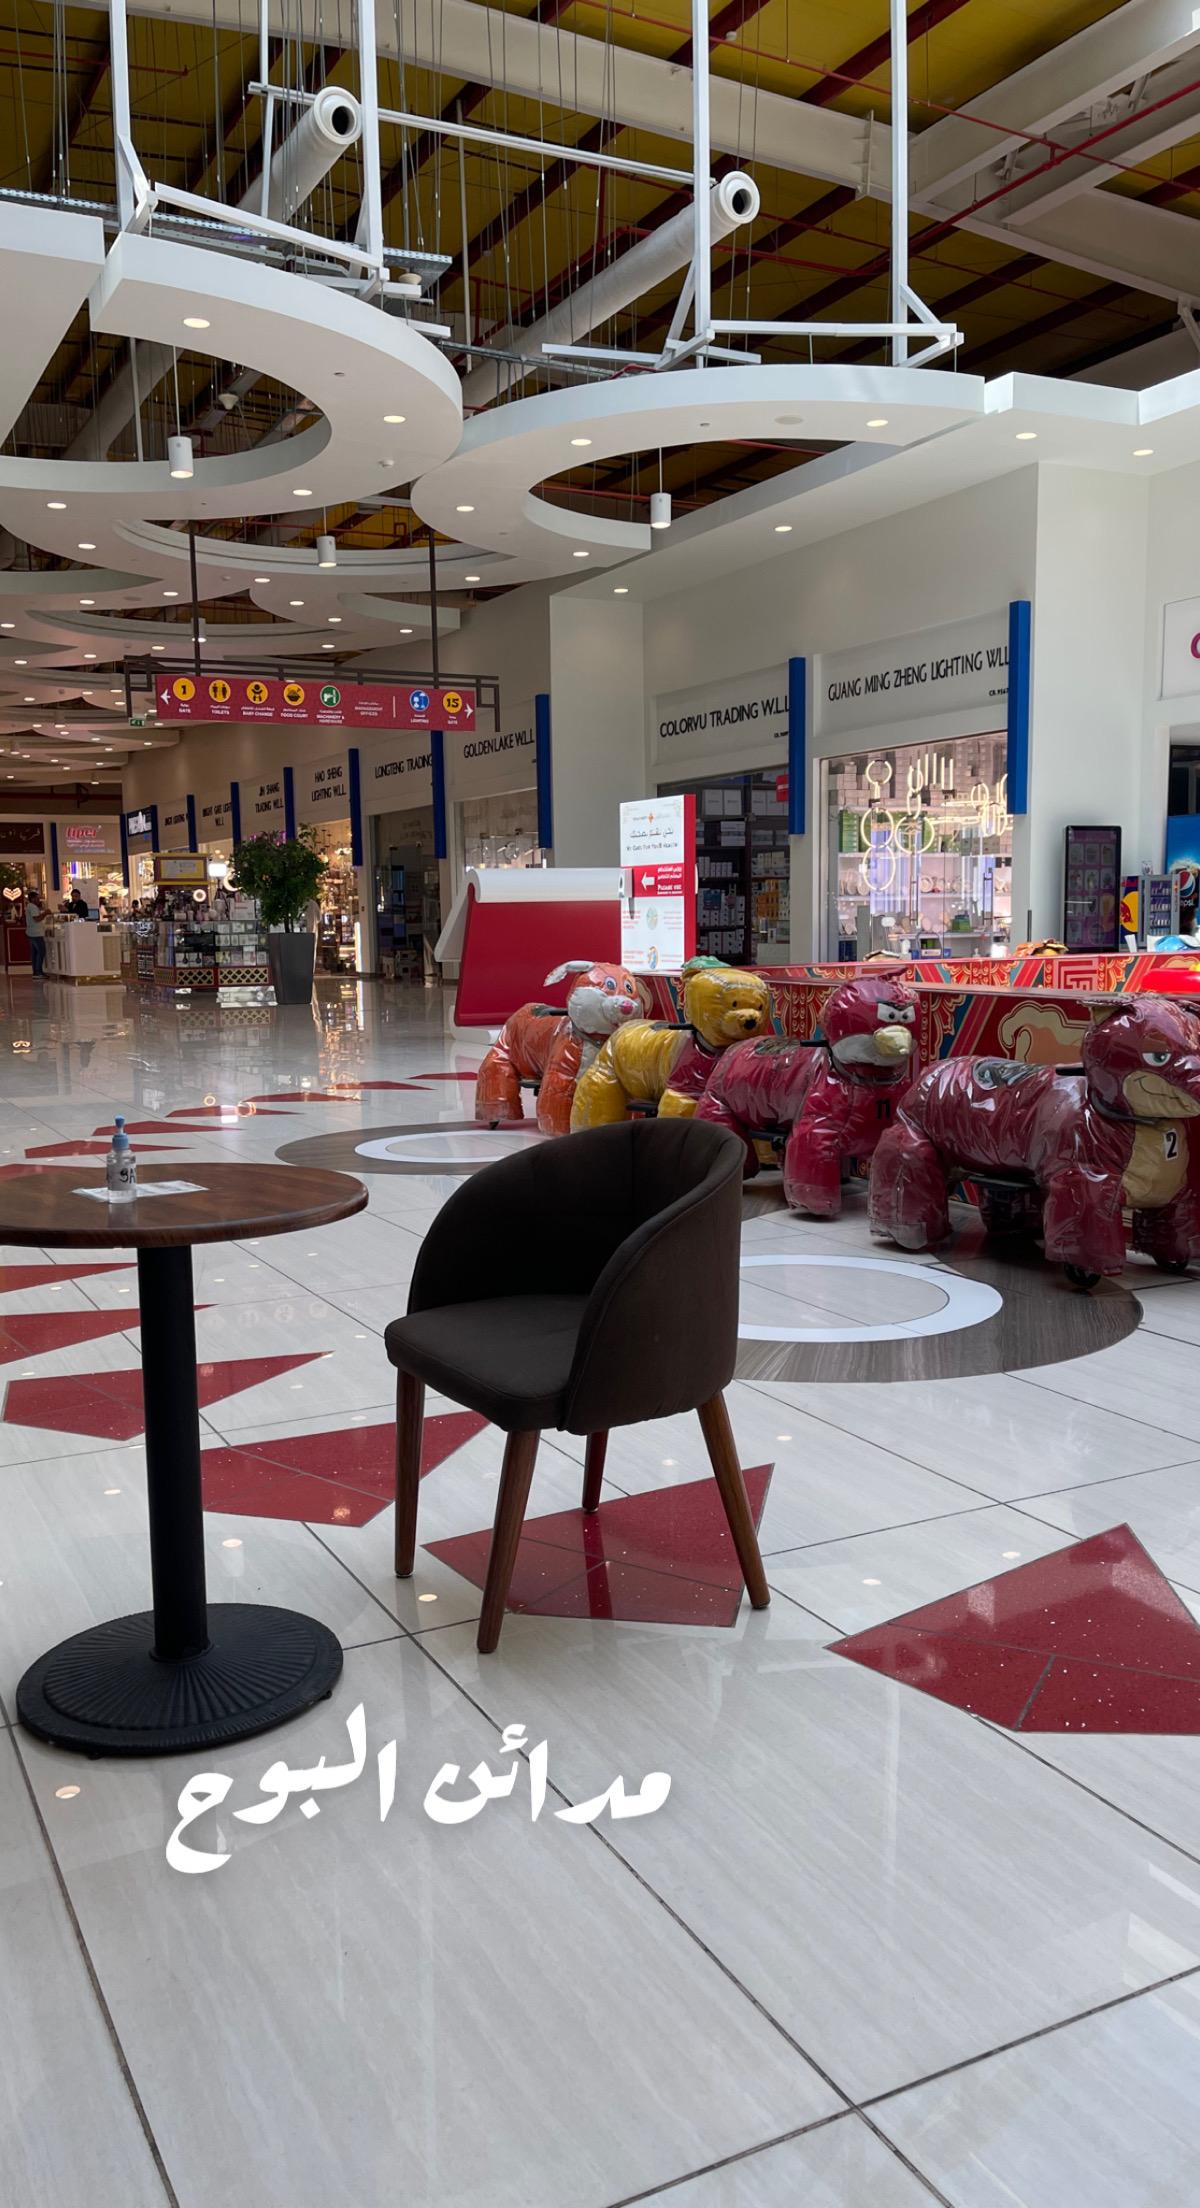 السوق الصيني في البحرين